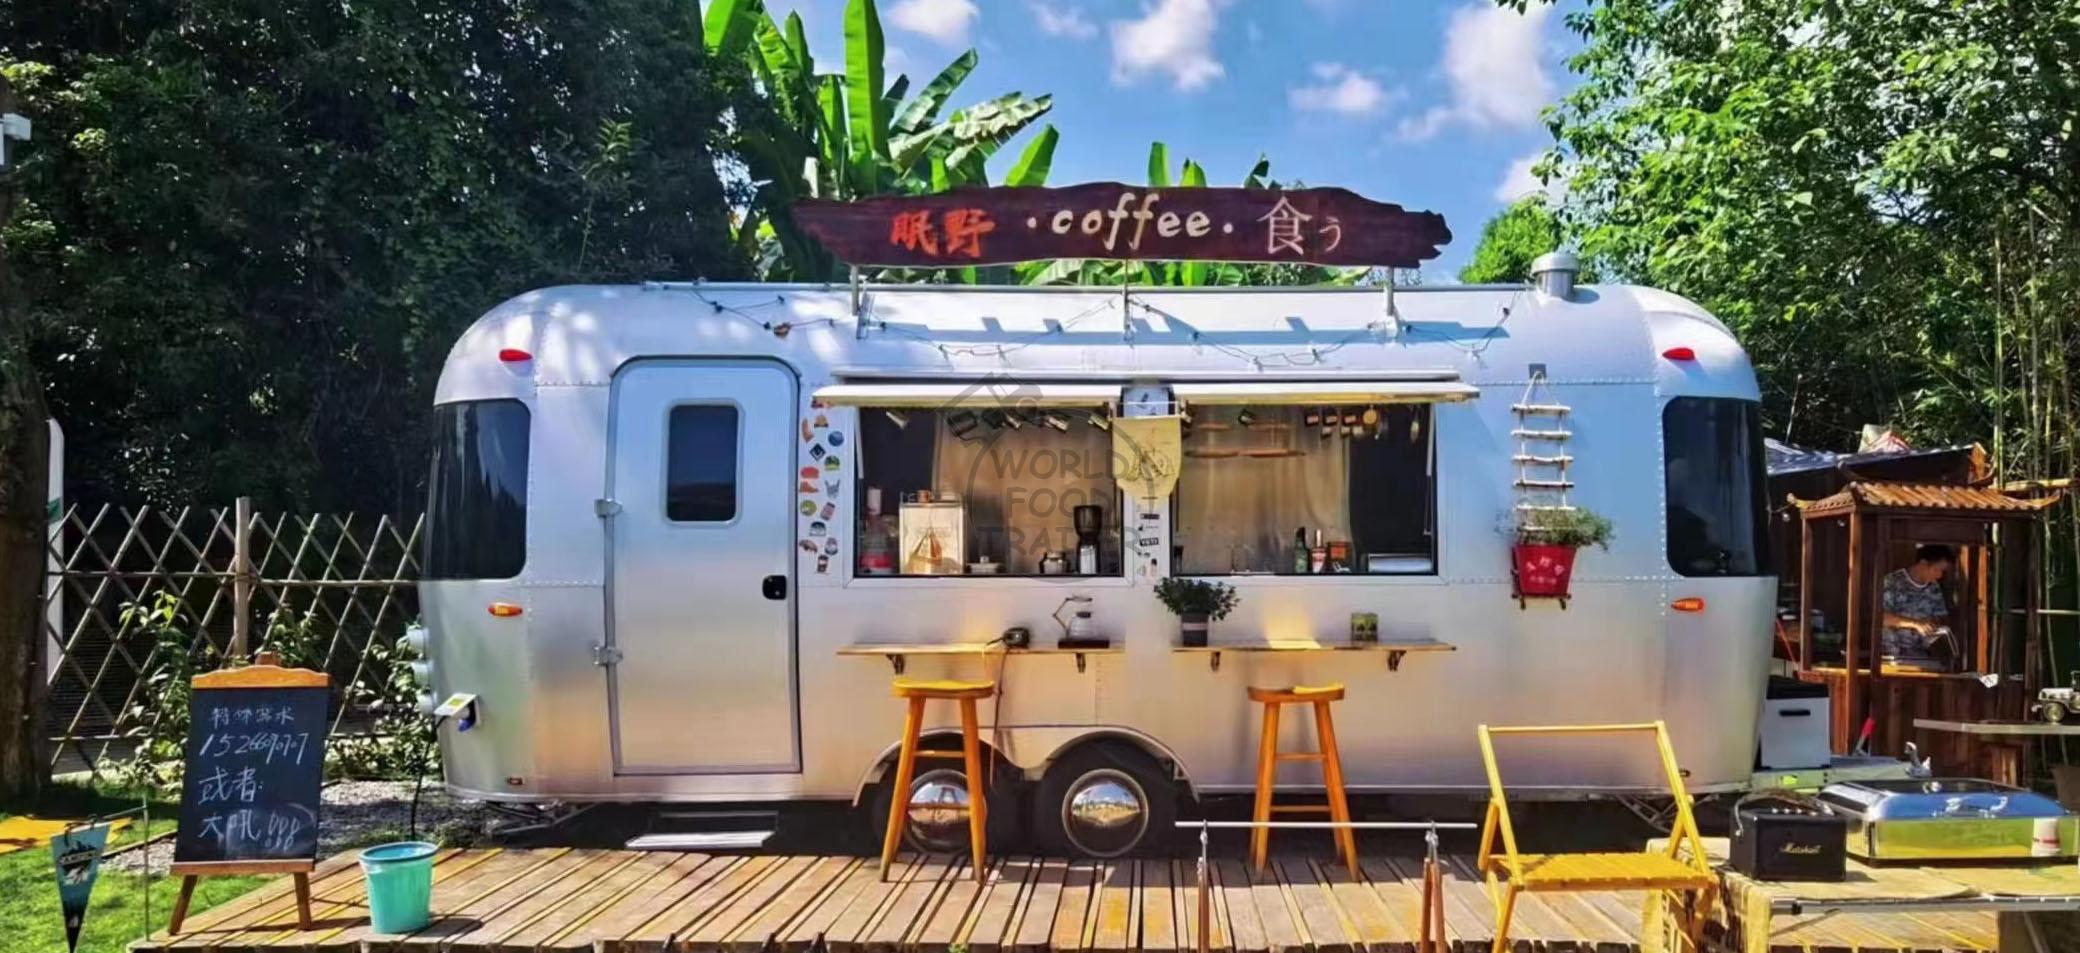 Airstream Food Trailer, Mobile Food Shop on Wheels, Food Trailer Van BBQ Cooking Van